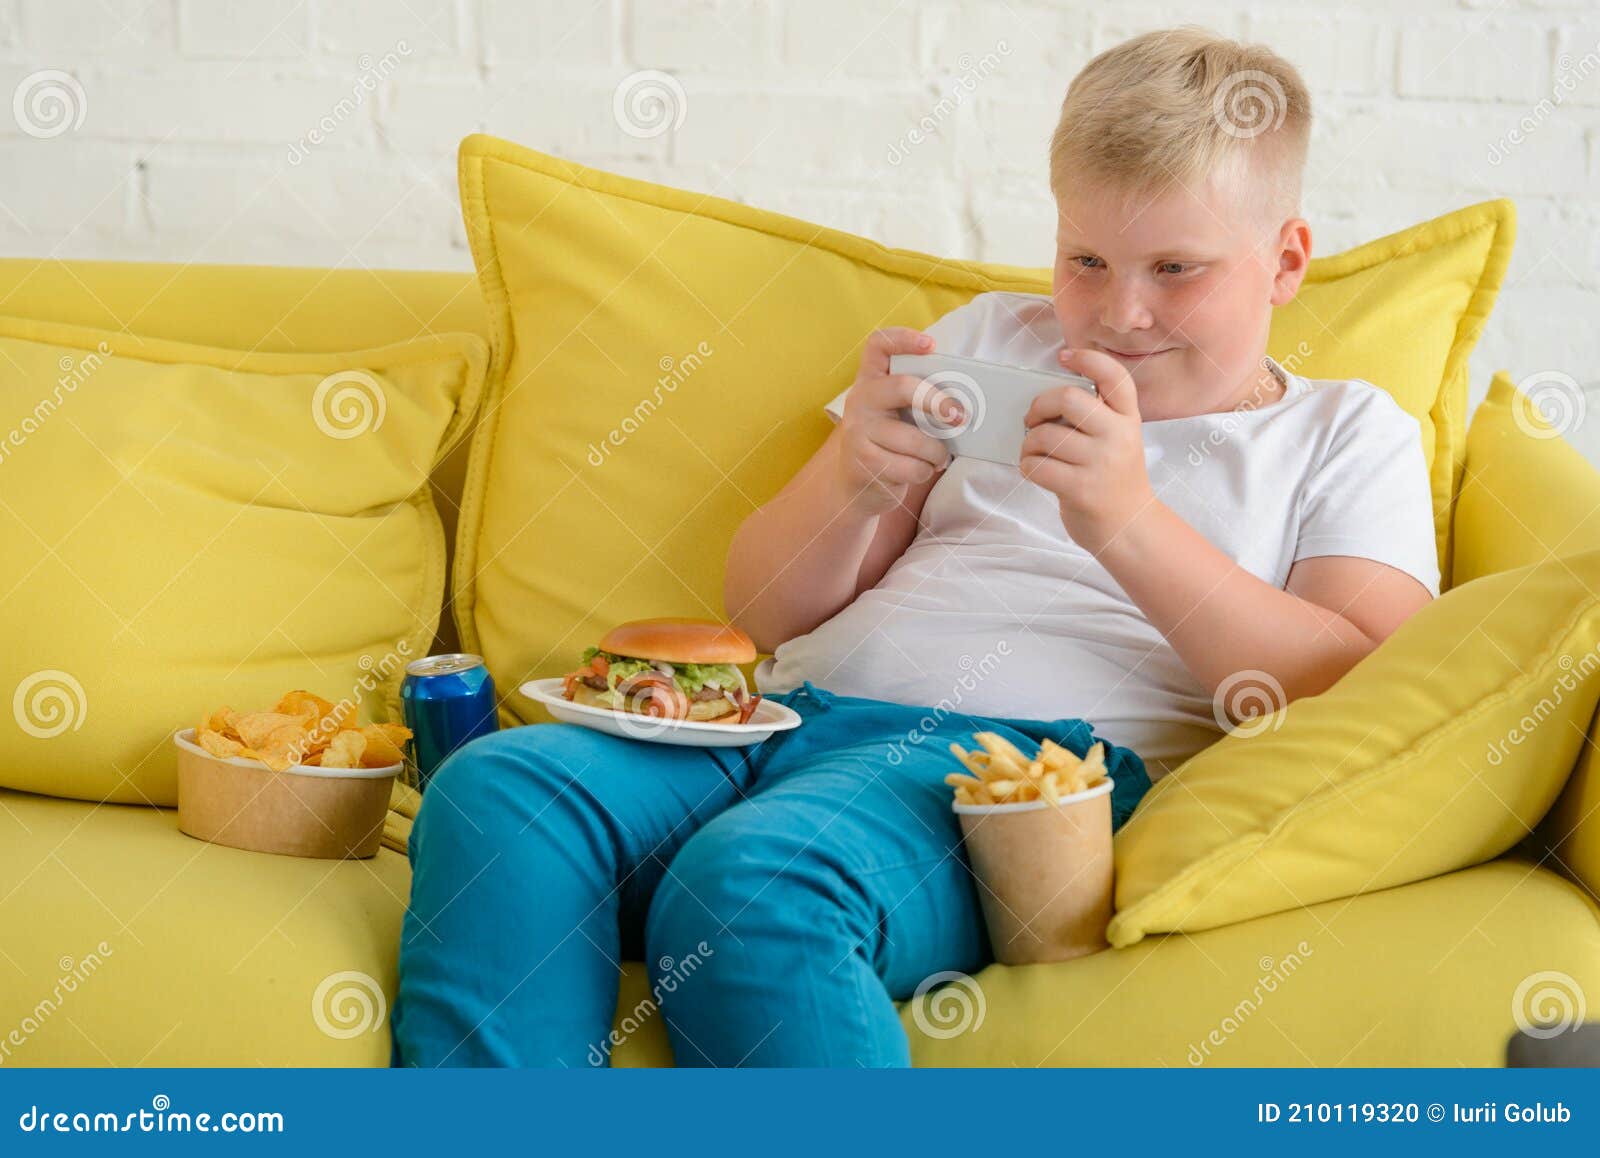 retrato menino jogando no celular enquanto espera por comida